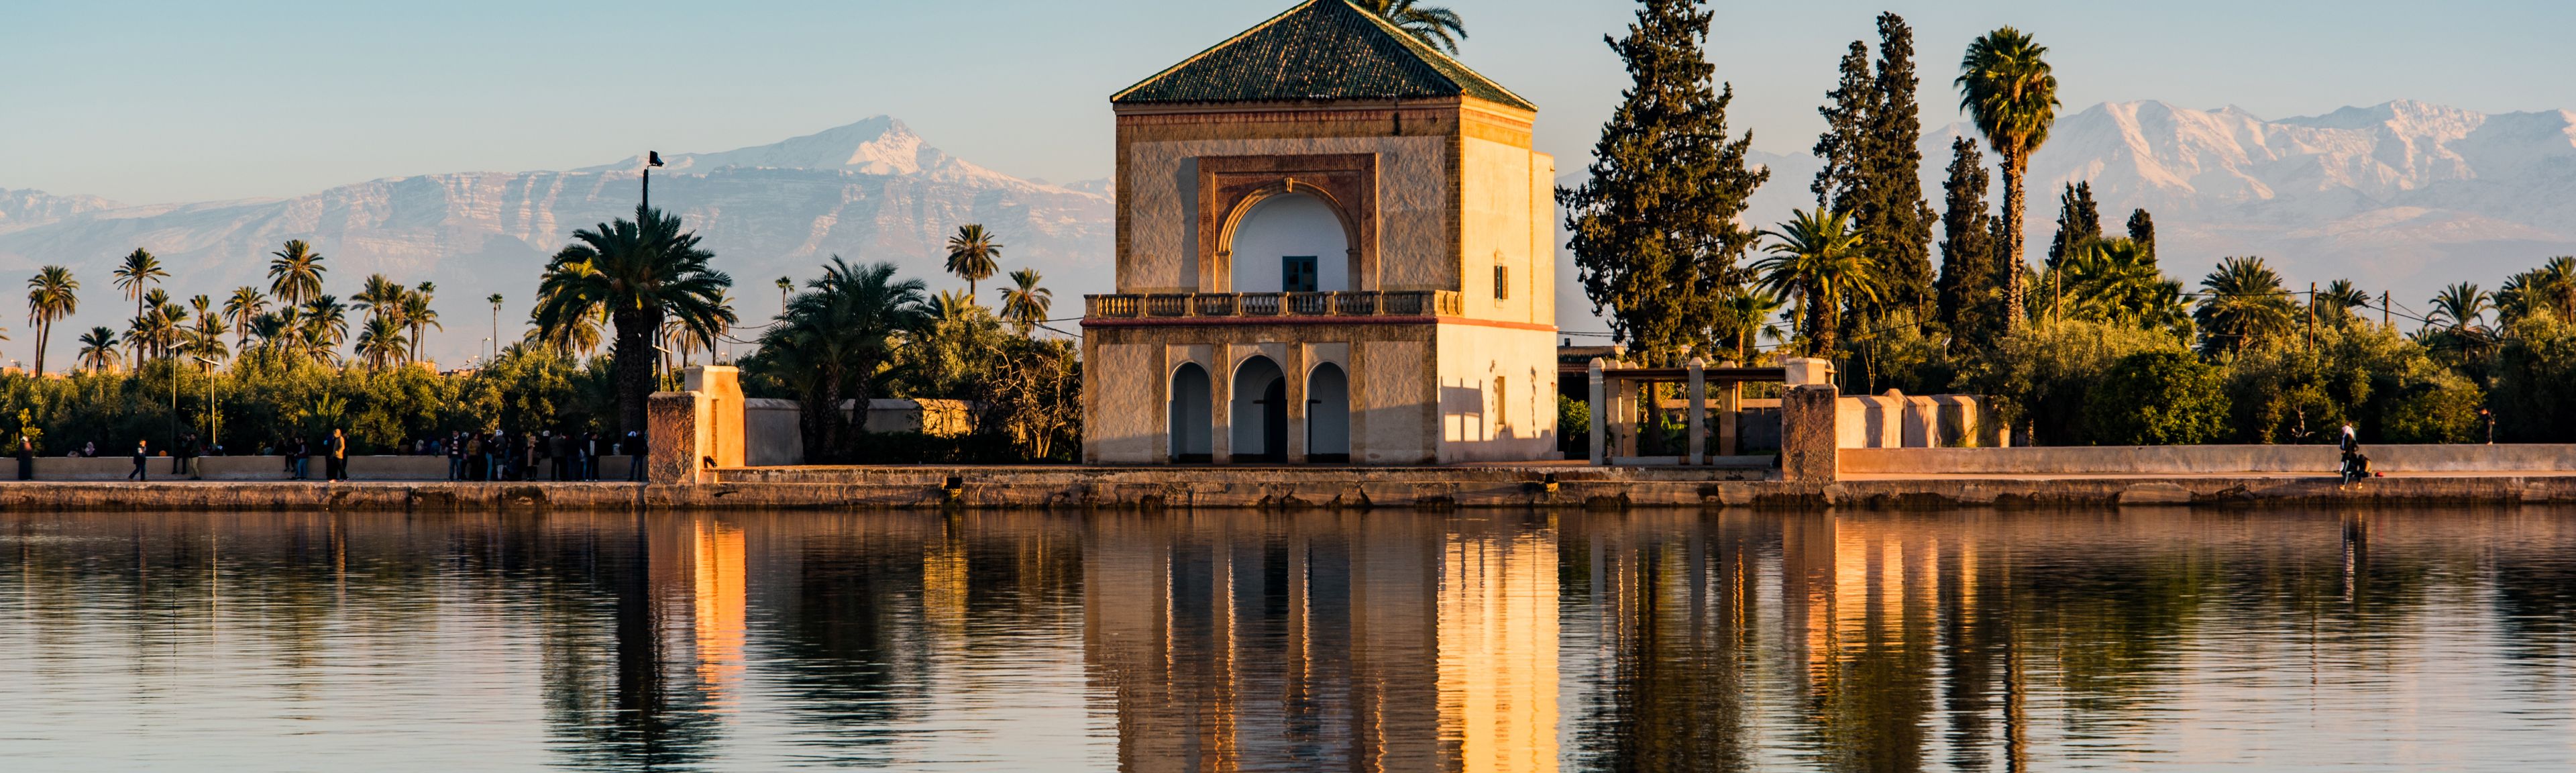 Pavillon am Wasser umgeben von Palmen